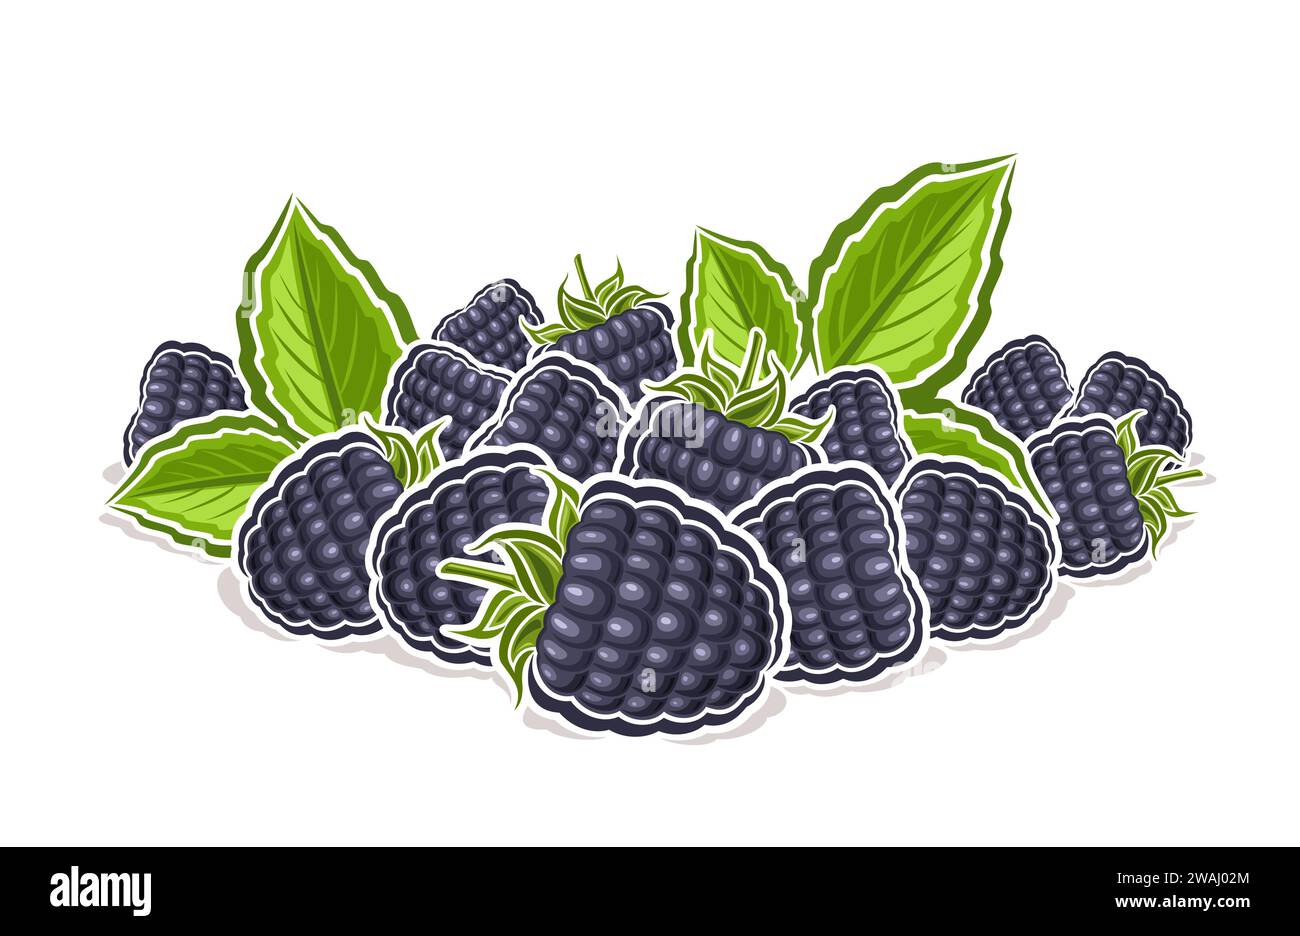 Vektor-Logo für Blackberry, dekoratives horizontales Poster mit Umrissillustration der Reifen blackberry-Komposition mit grünen Zweigen, Zeichentrickdesign fr Stock Vektor